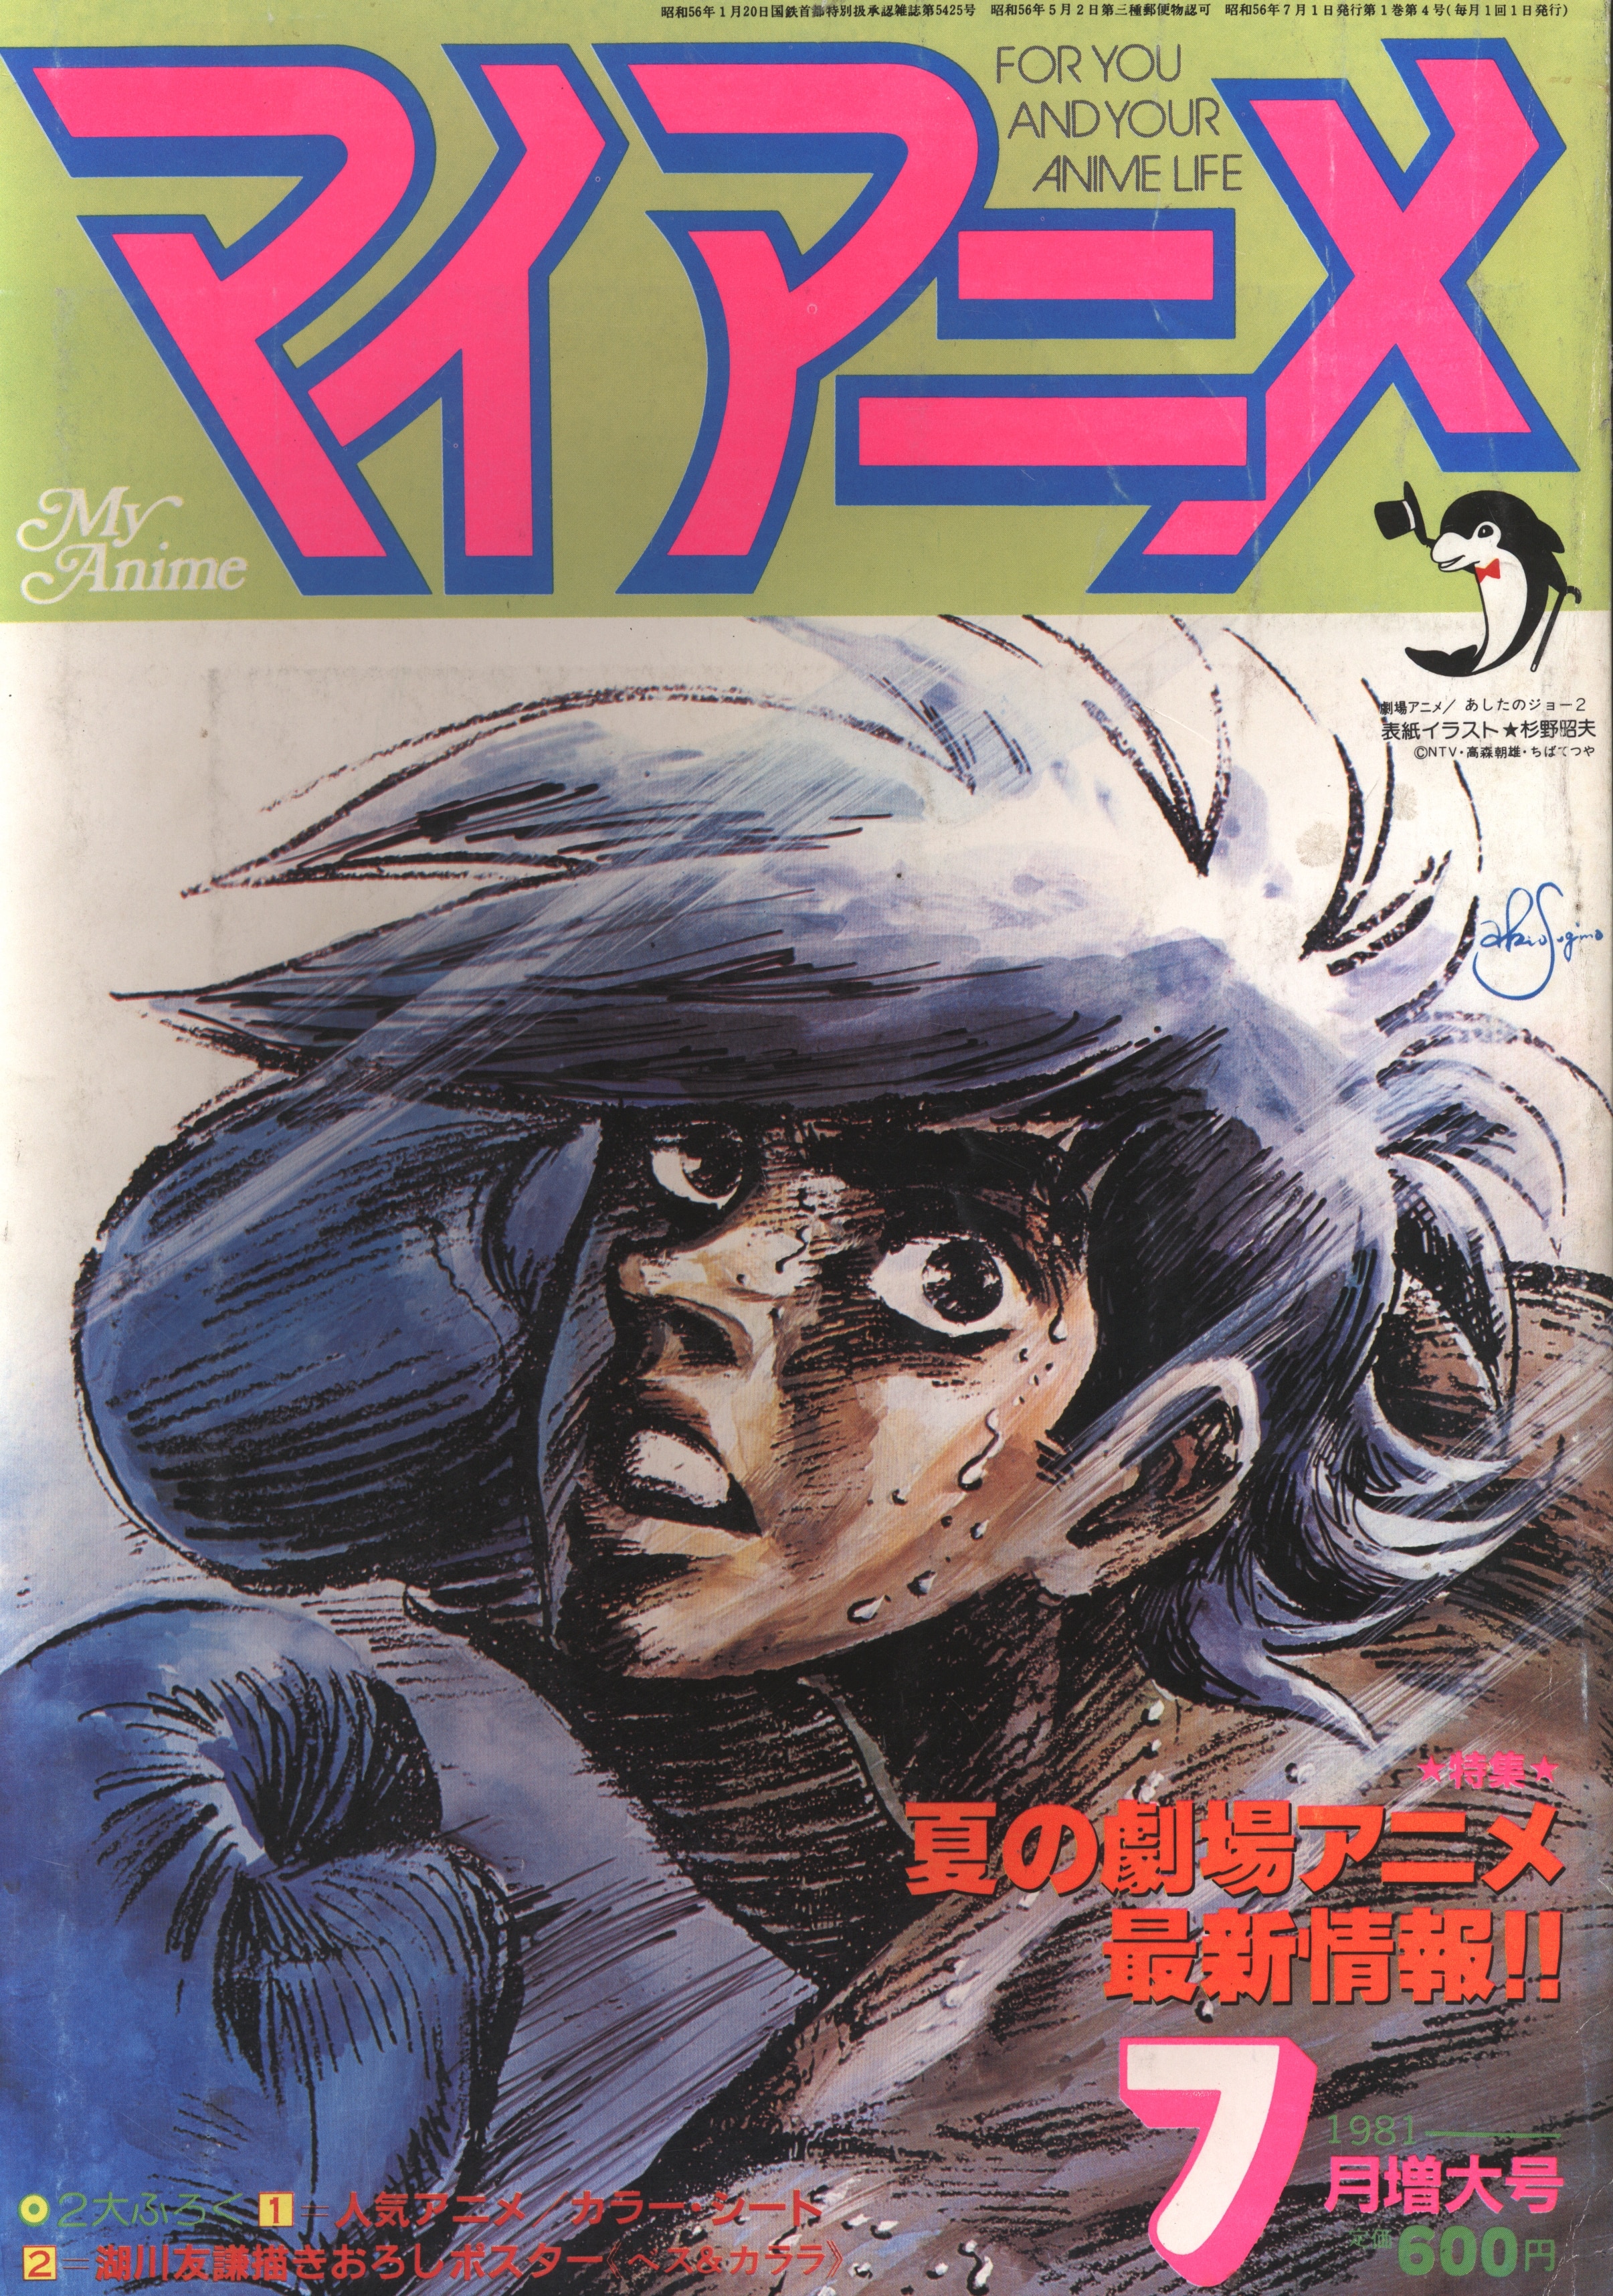 秋田書店 1981年 昭和56年 のアニメ雑誌 本誌のみ マイアニメ 1981年 昭和56年 7月号 8107 まんだらけ Mandarake